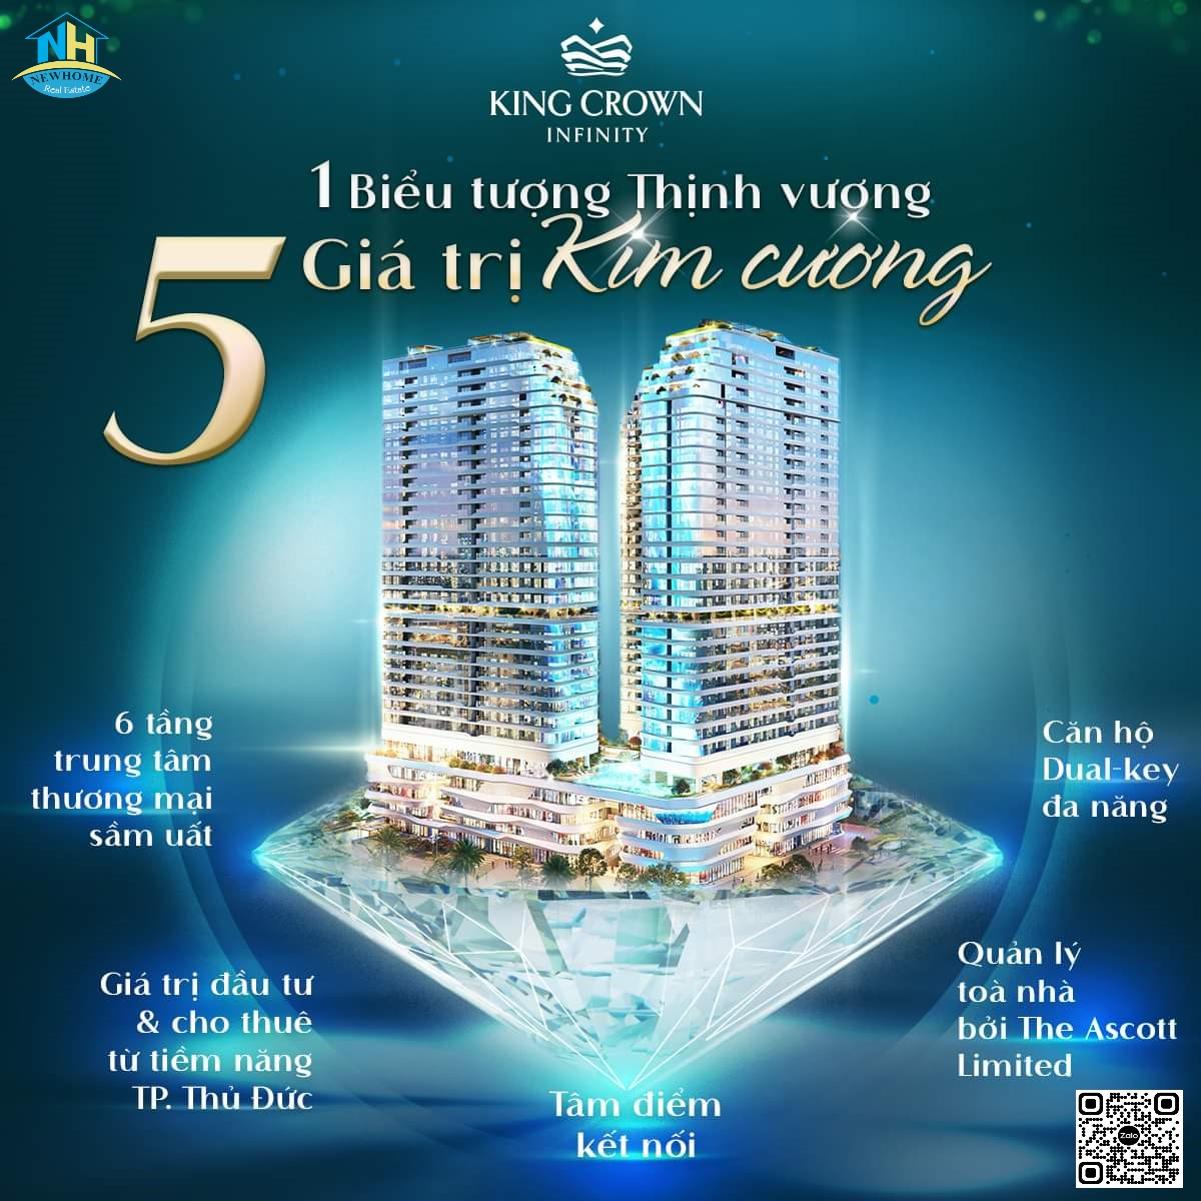 5 Giá trị vàng dự án King Crown Infinity